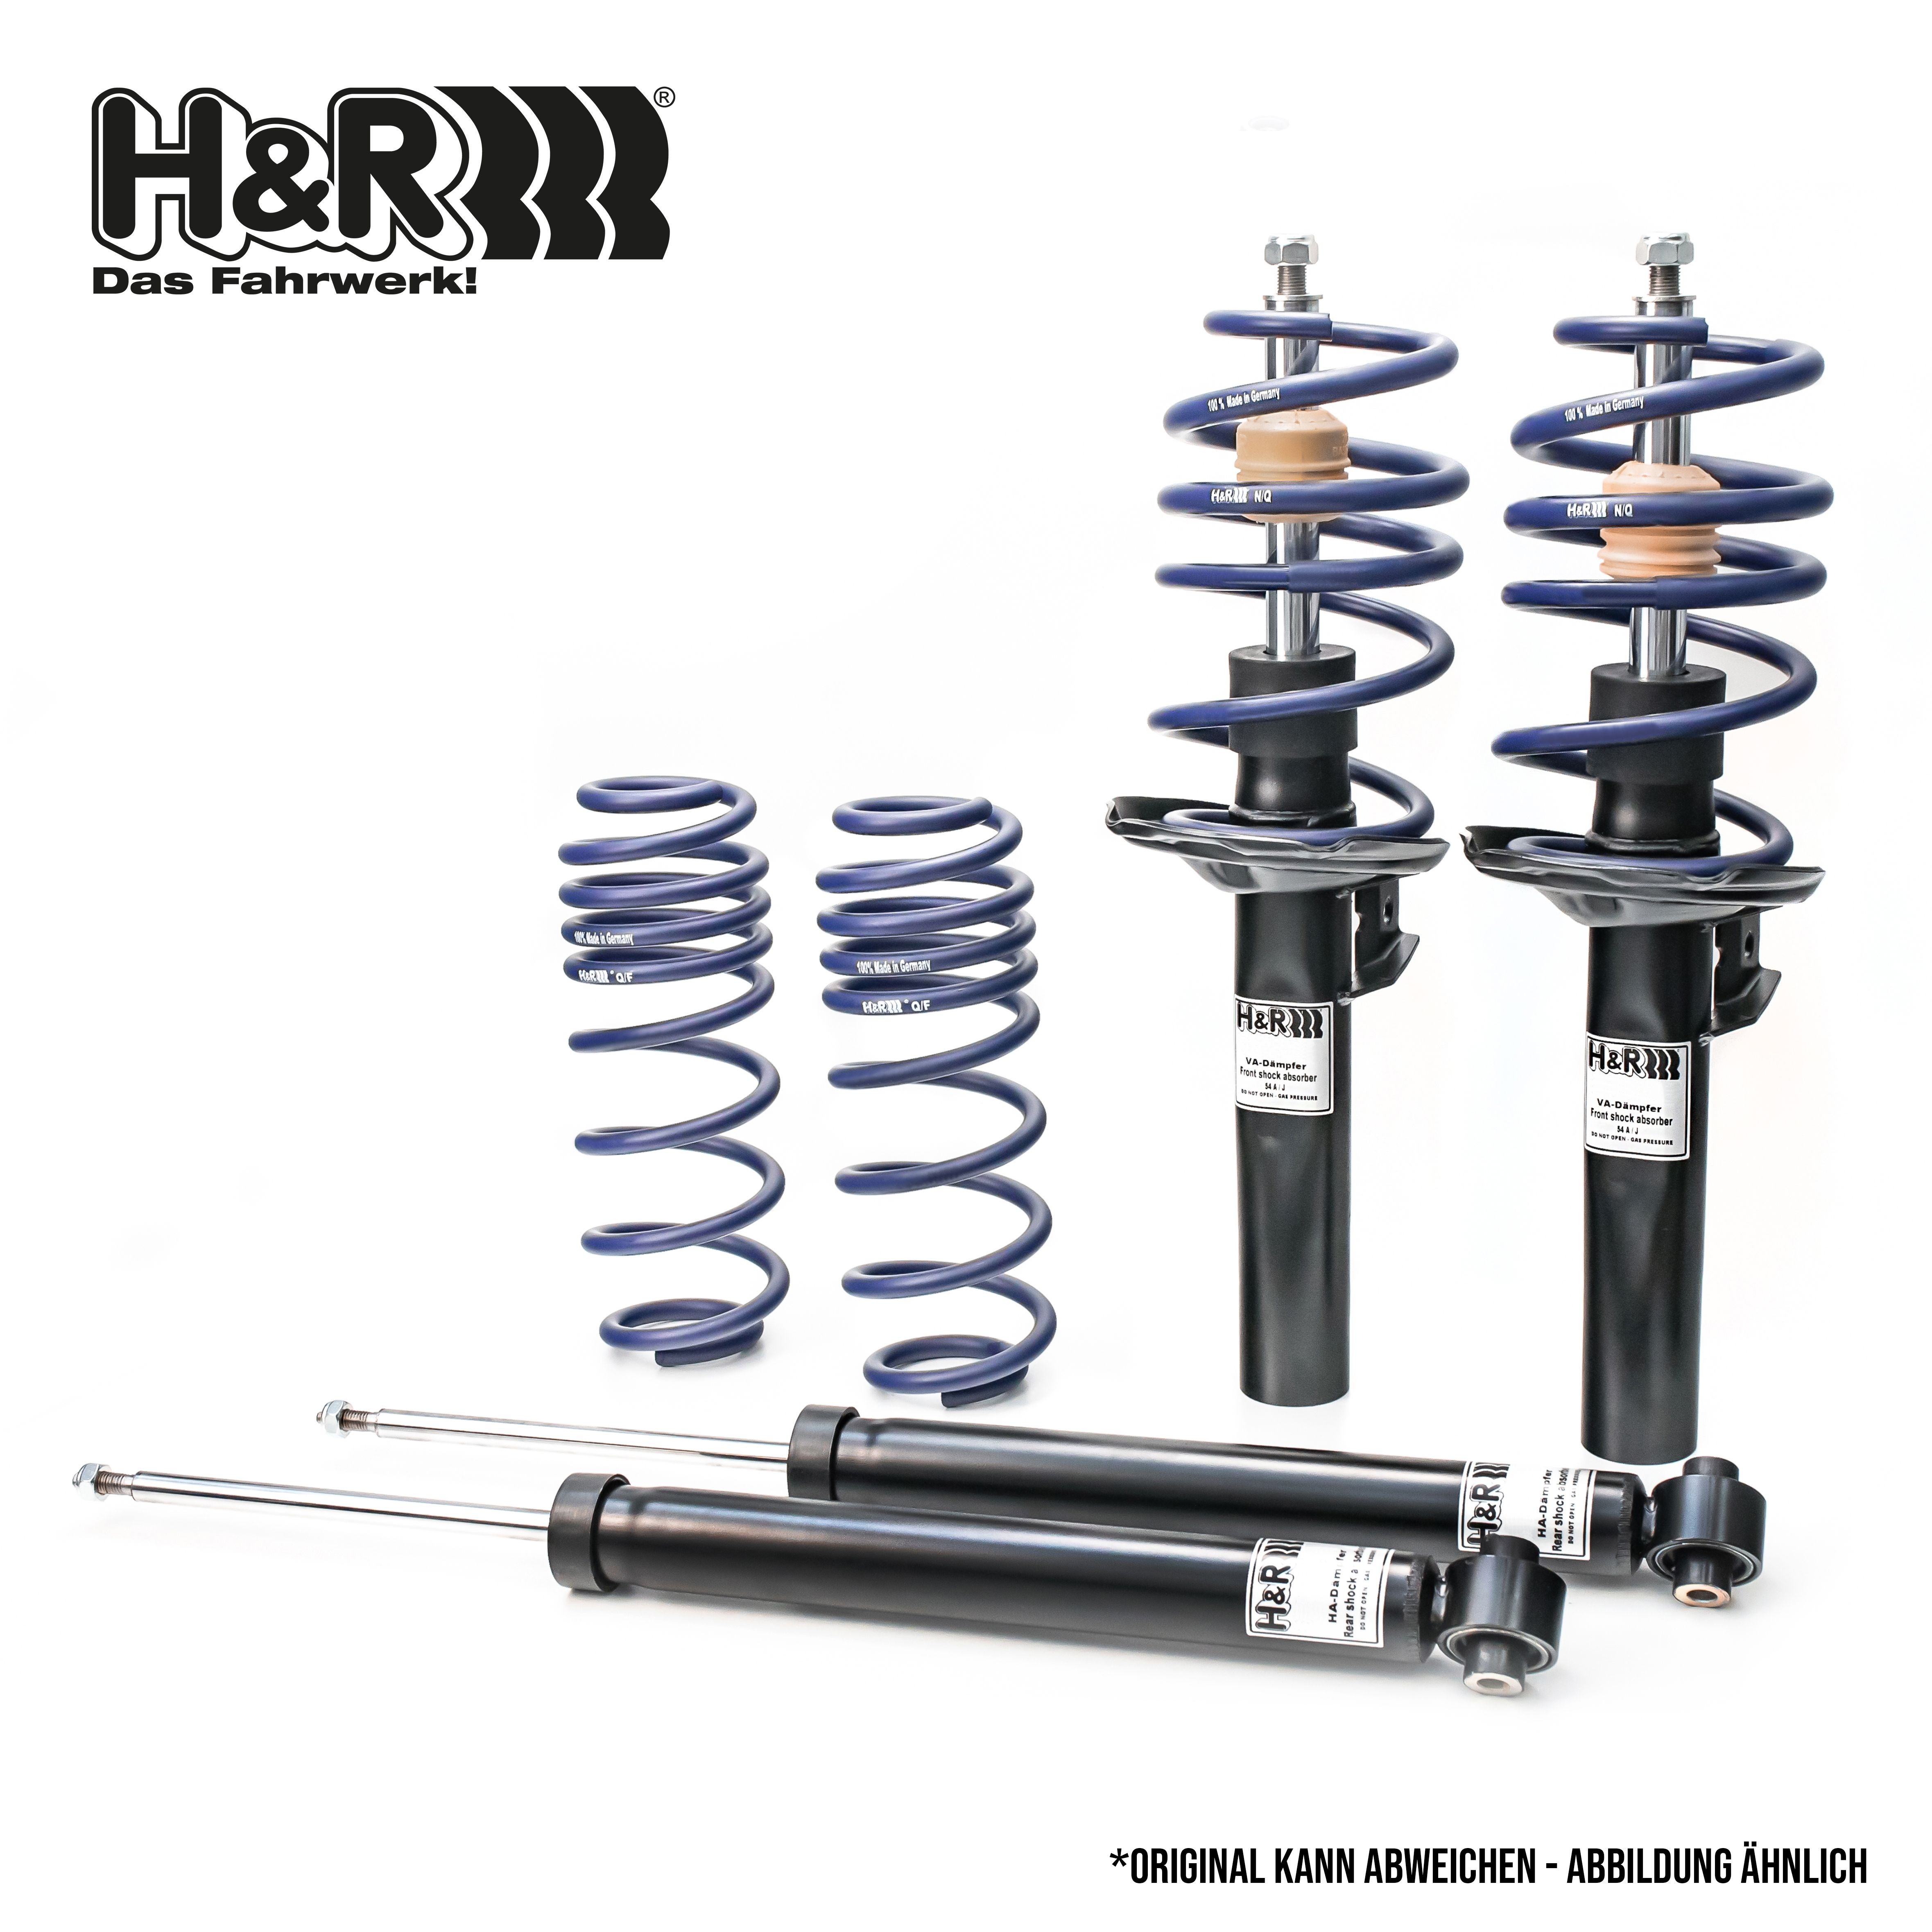 H&R Shock absorber set 40864-1 buy